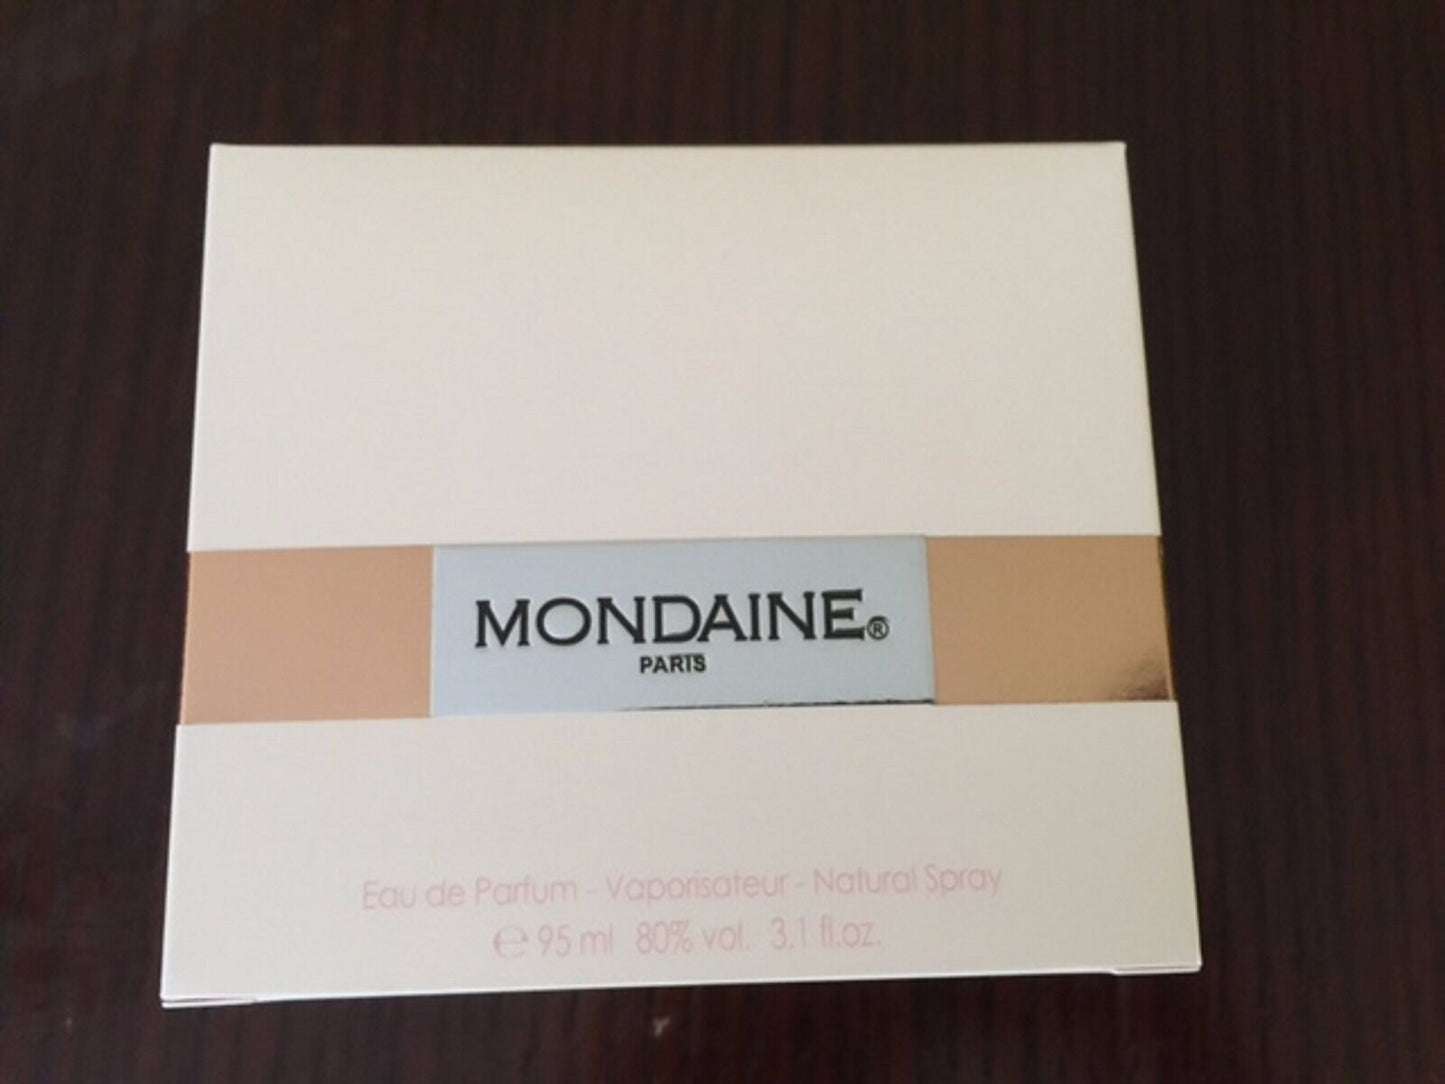 Mondaine by Paris Bleu 3.1 oz Eau de Parfum Spray for Women